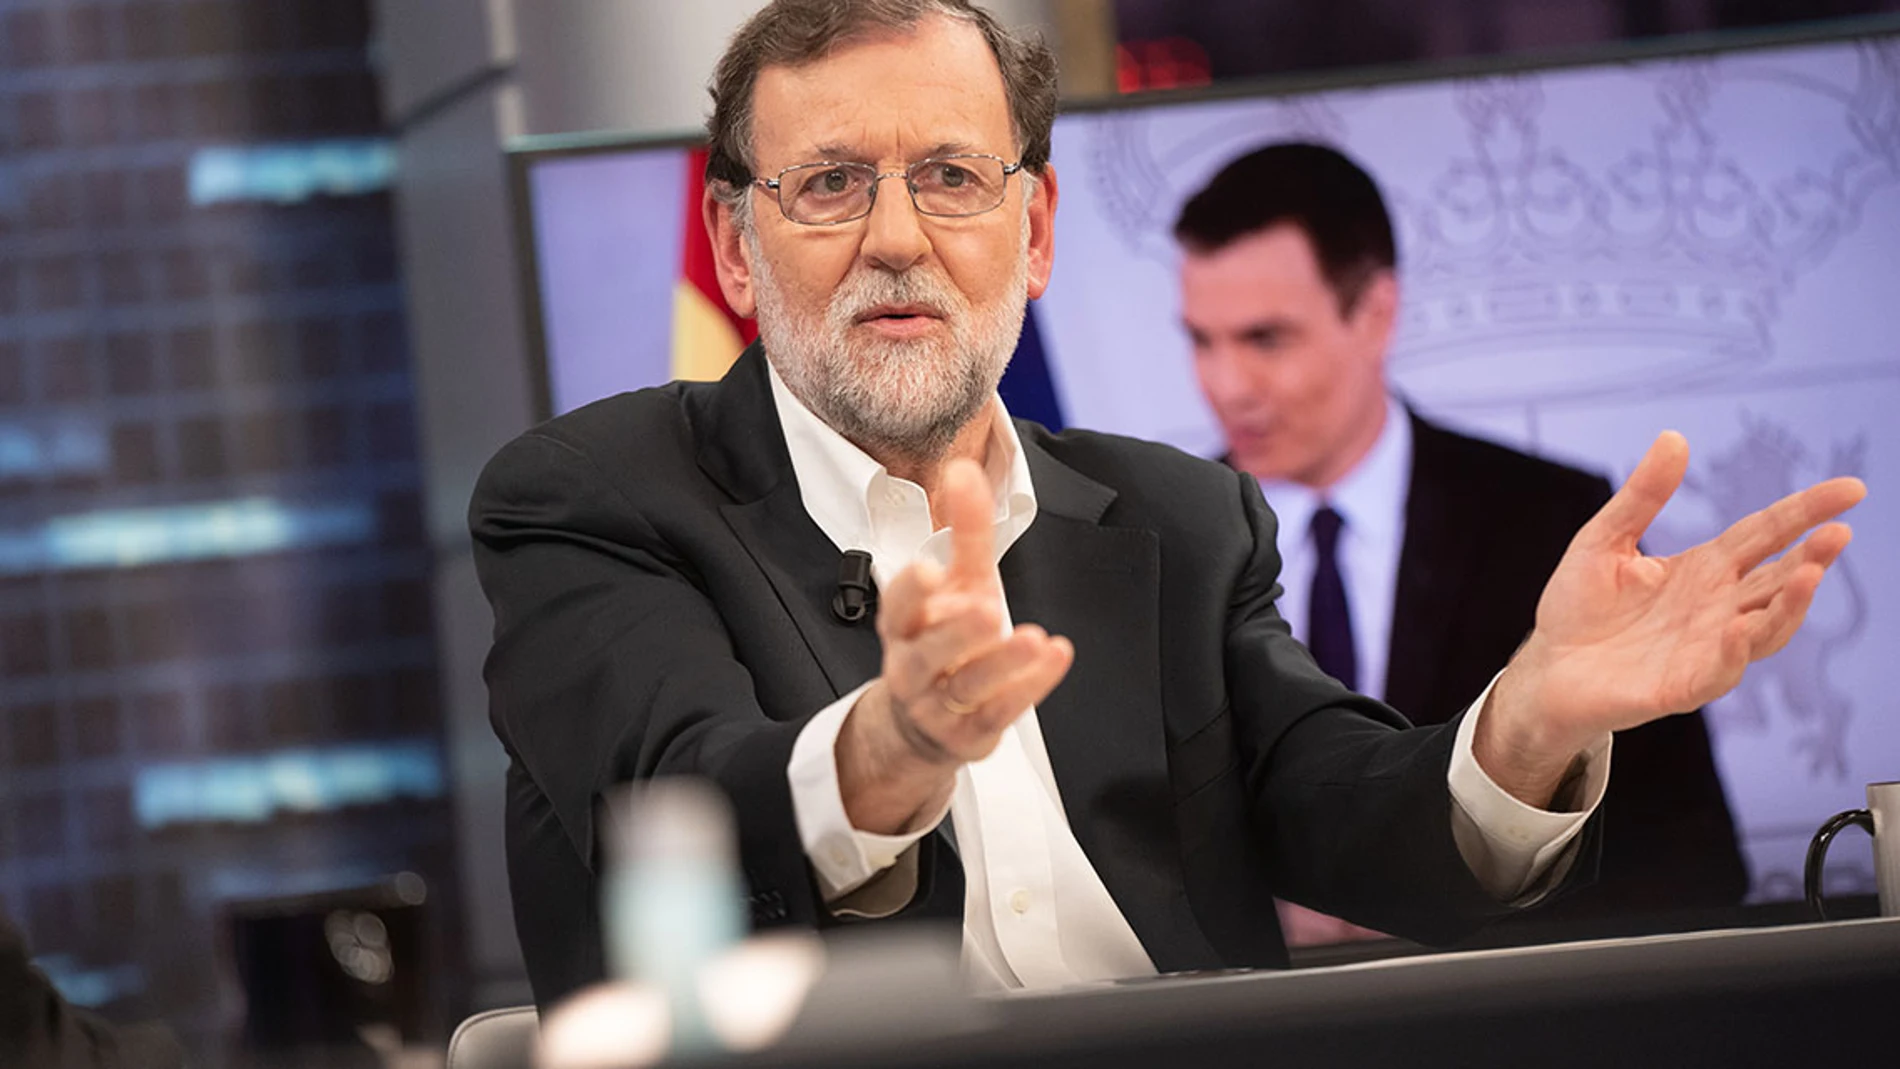 La soledad del poder, Mariano Rajoy